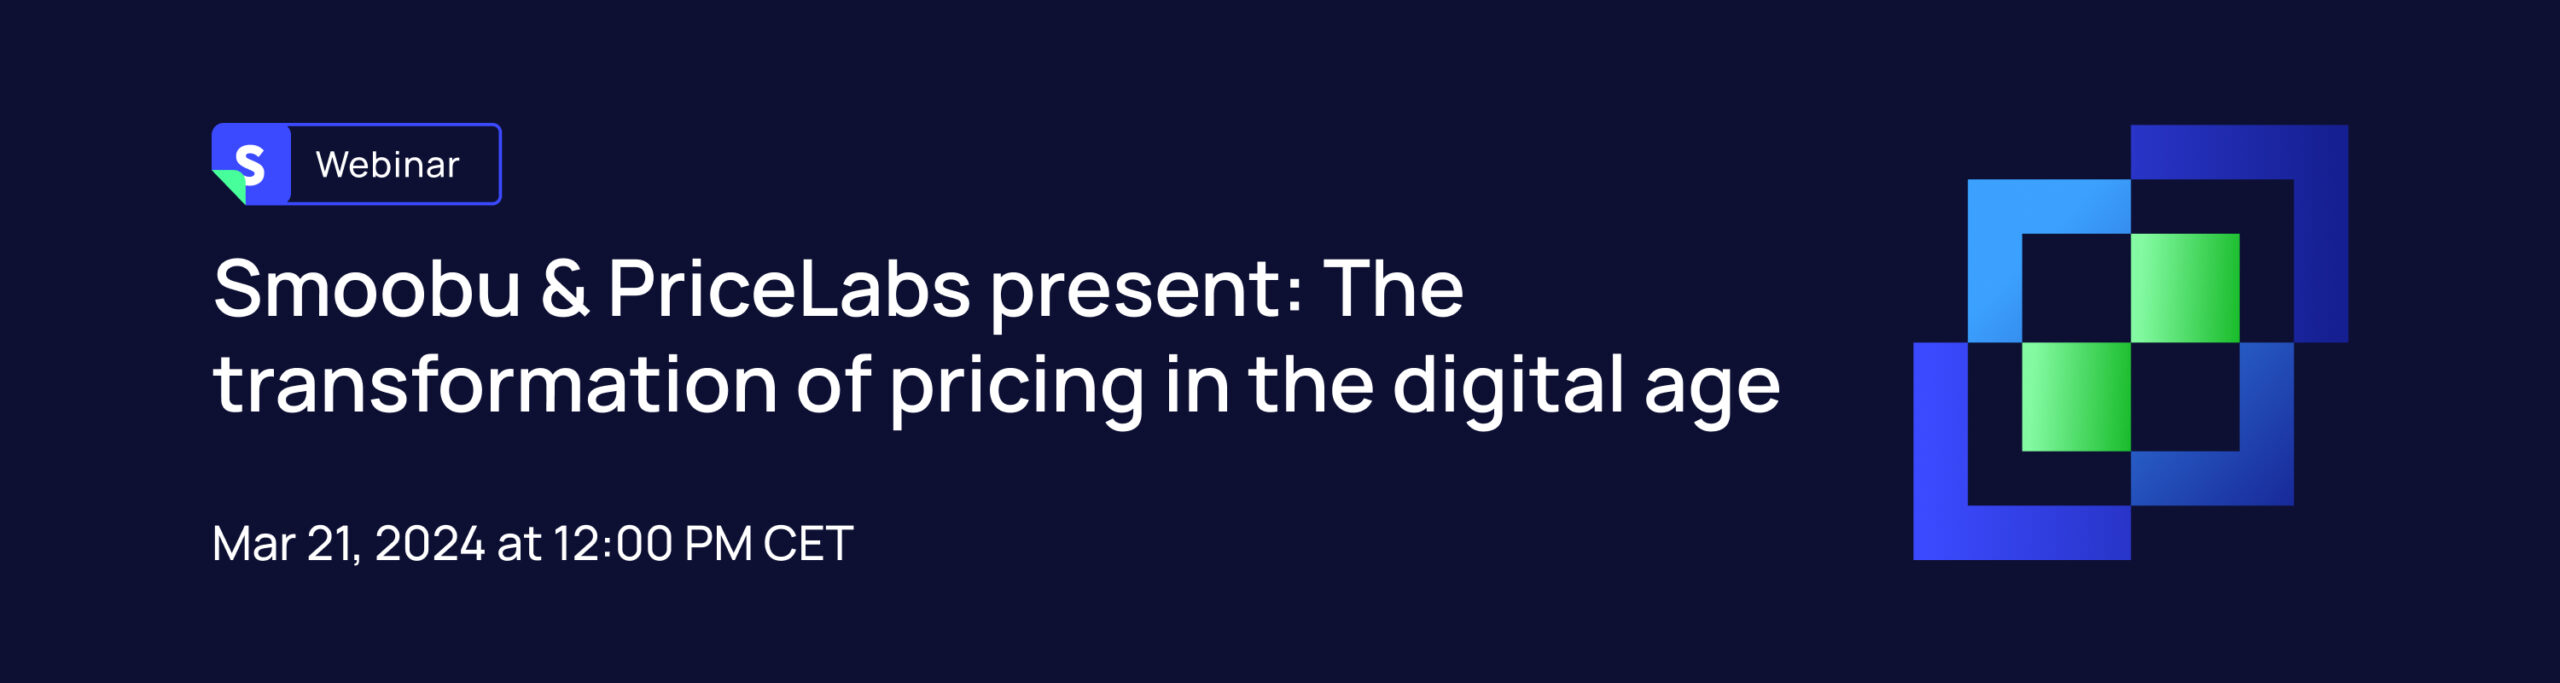 ᐅ Smoobu & PriceLabs présentent : la transformation de la tarification à l’ère numérique | Smoobu